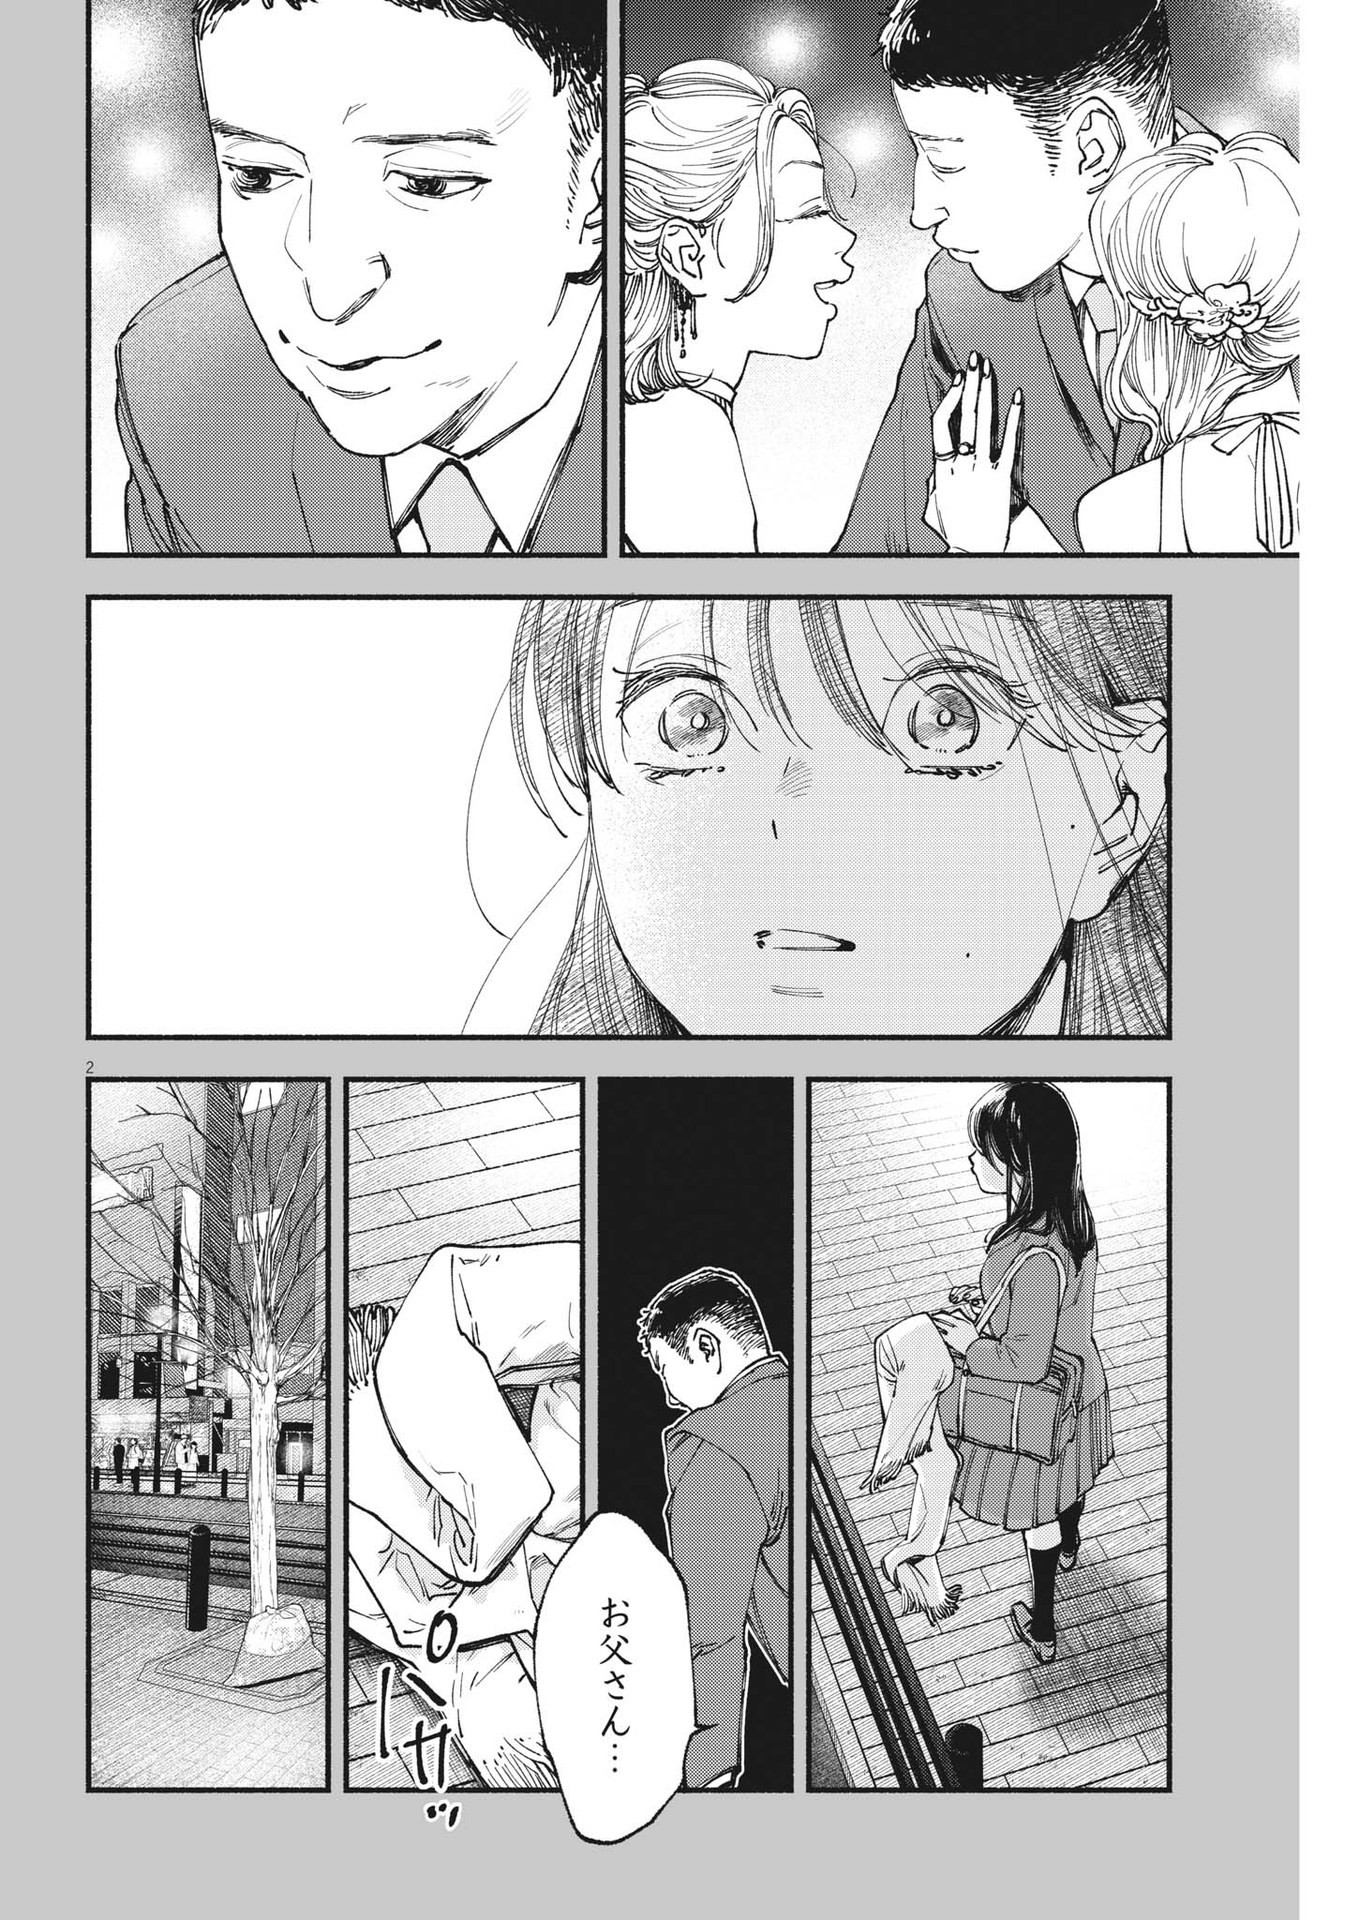 Konoyo wa Tatakau Kachi ga Aru  - Chapter 21 - Page 2